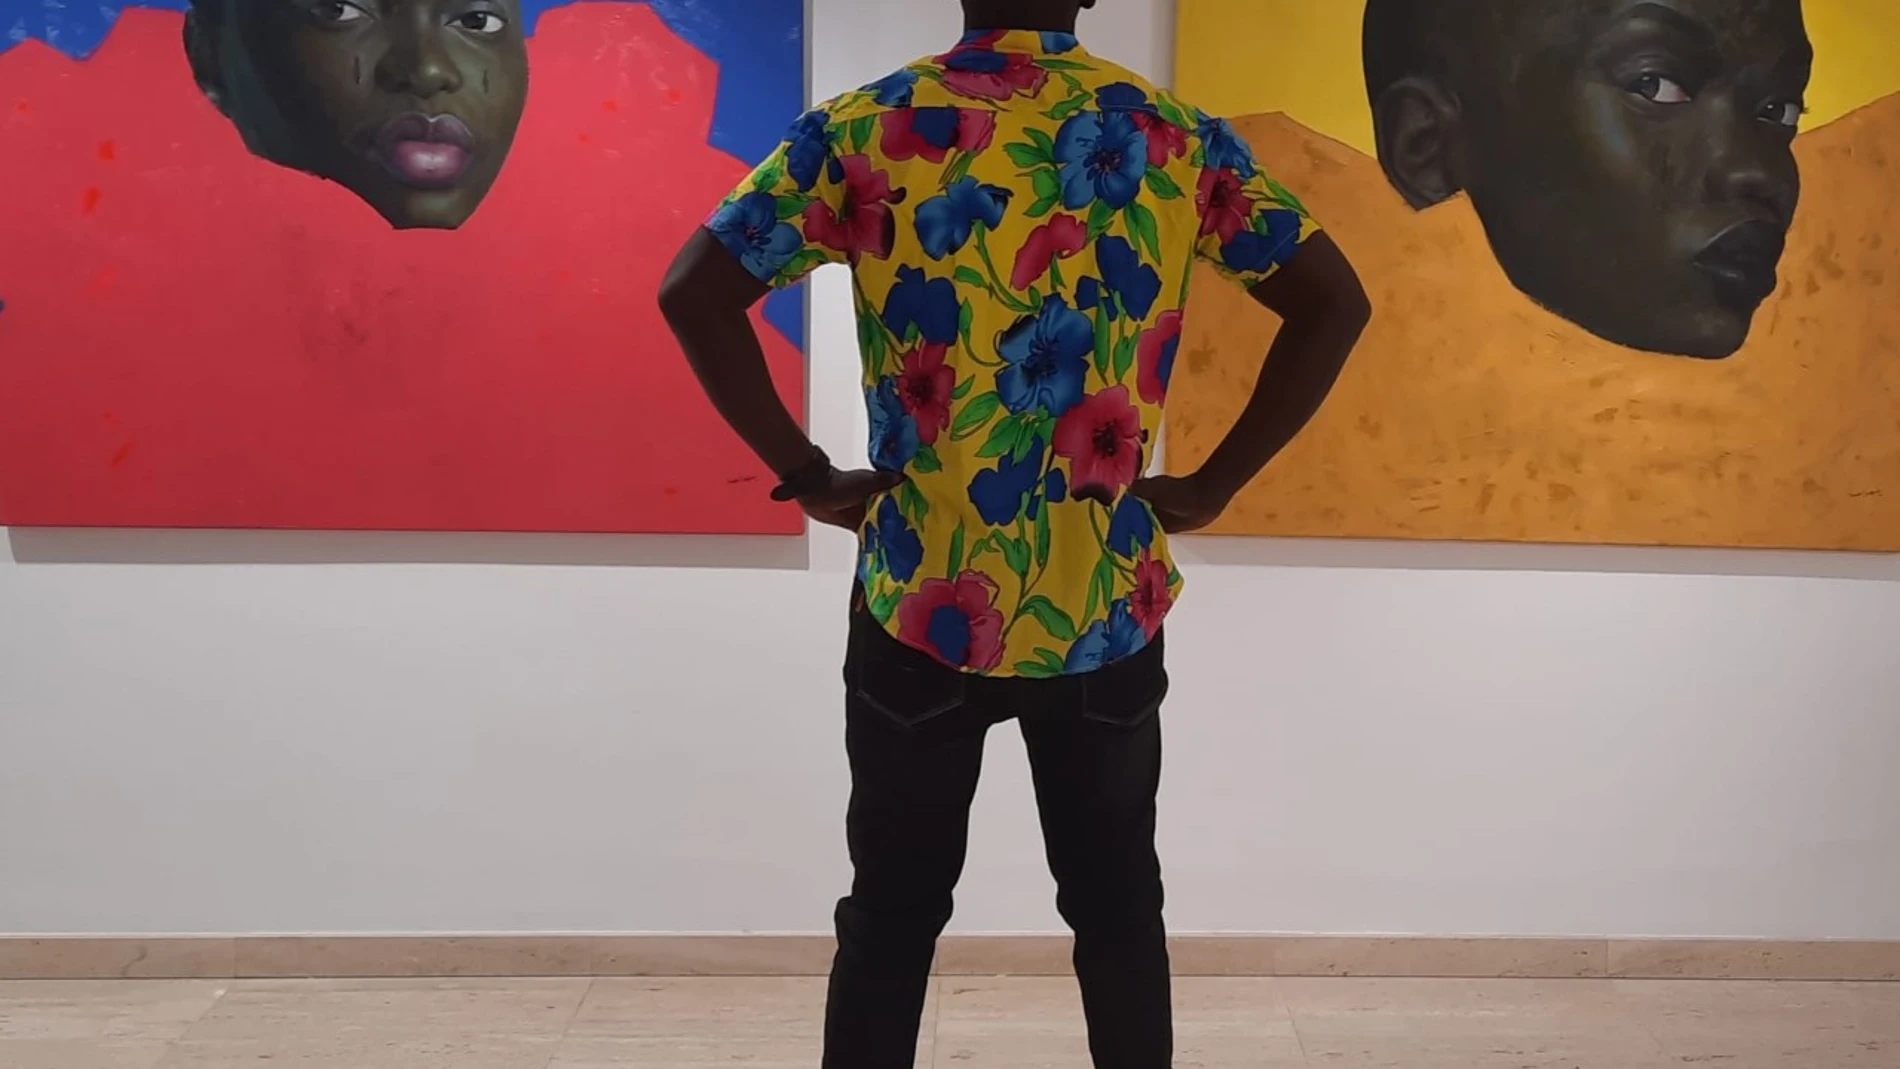 El artista contempla dos de sus trabajos en la nueva exposición